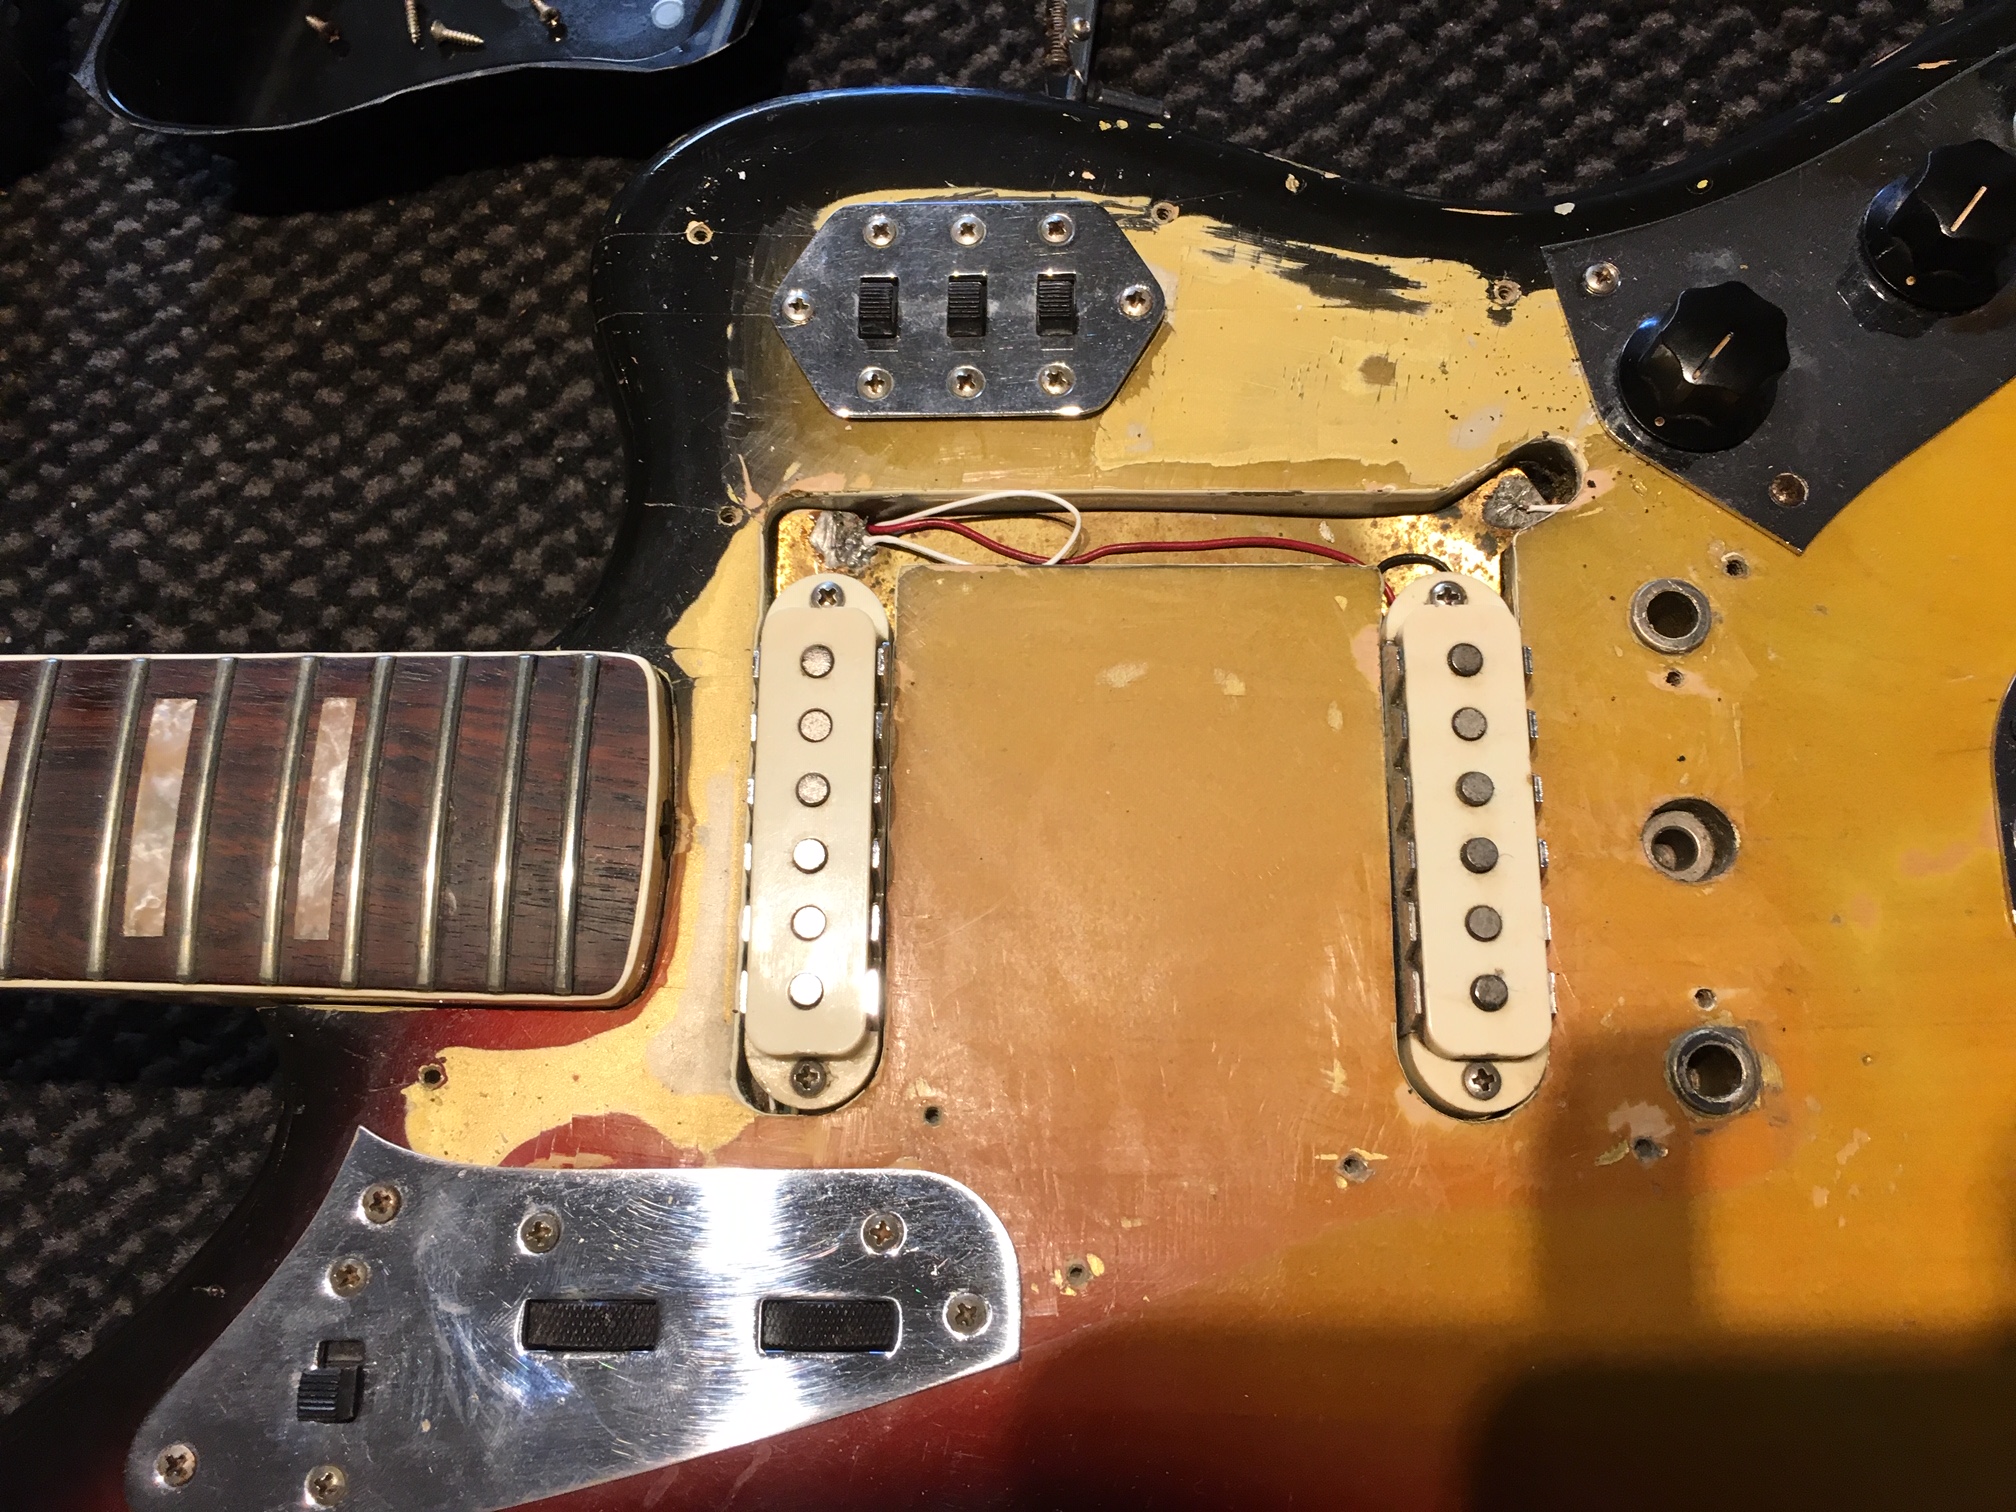 Fender-Jaguar-1966-sunburst-010.JPG